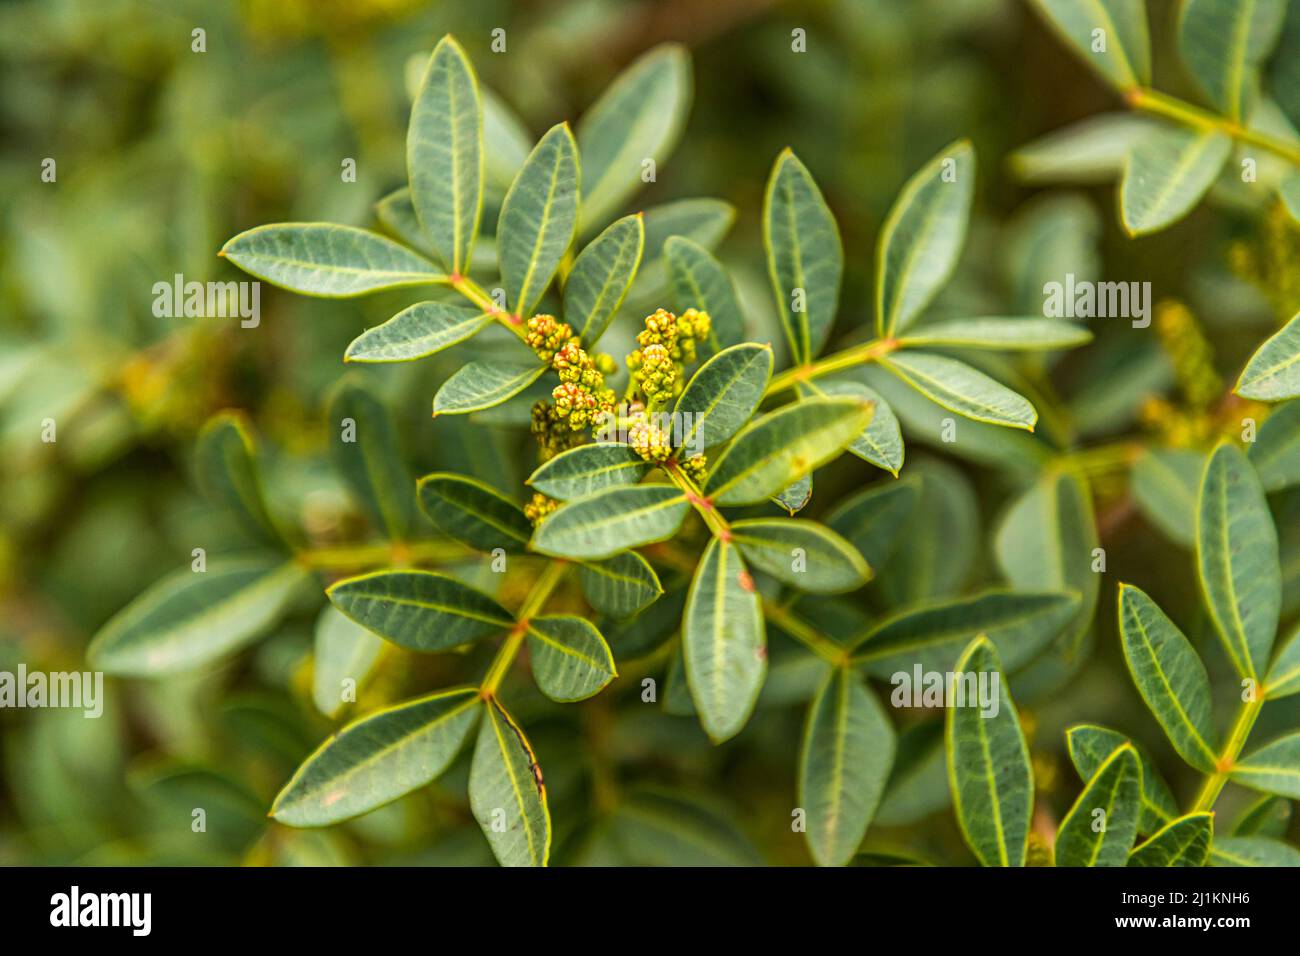 Arbusto Da Fiore Mediterraneo Immagini e Fotos Stock - Alamy